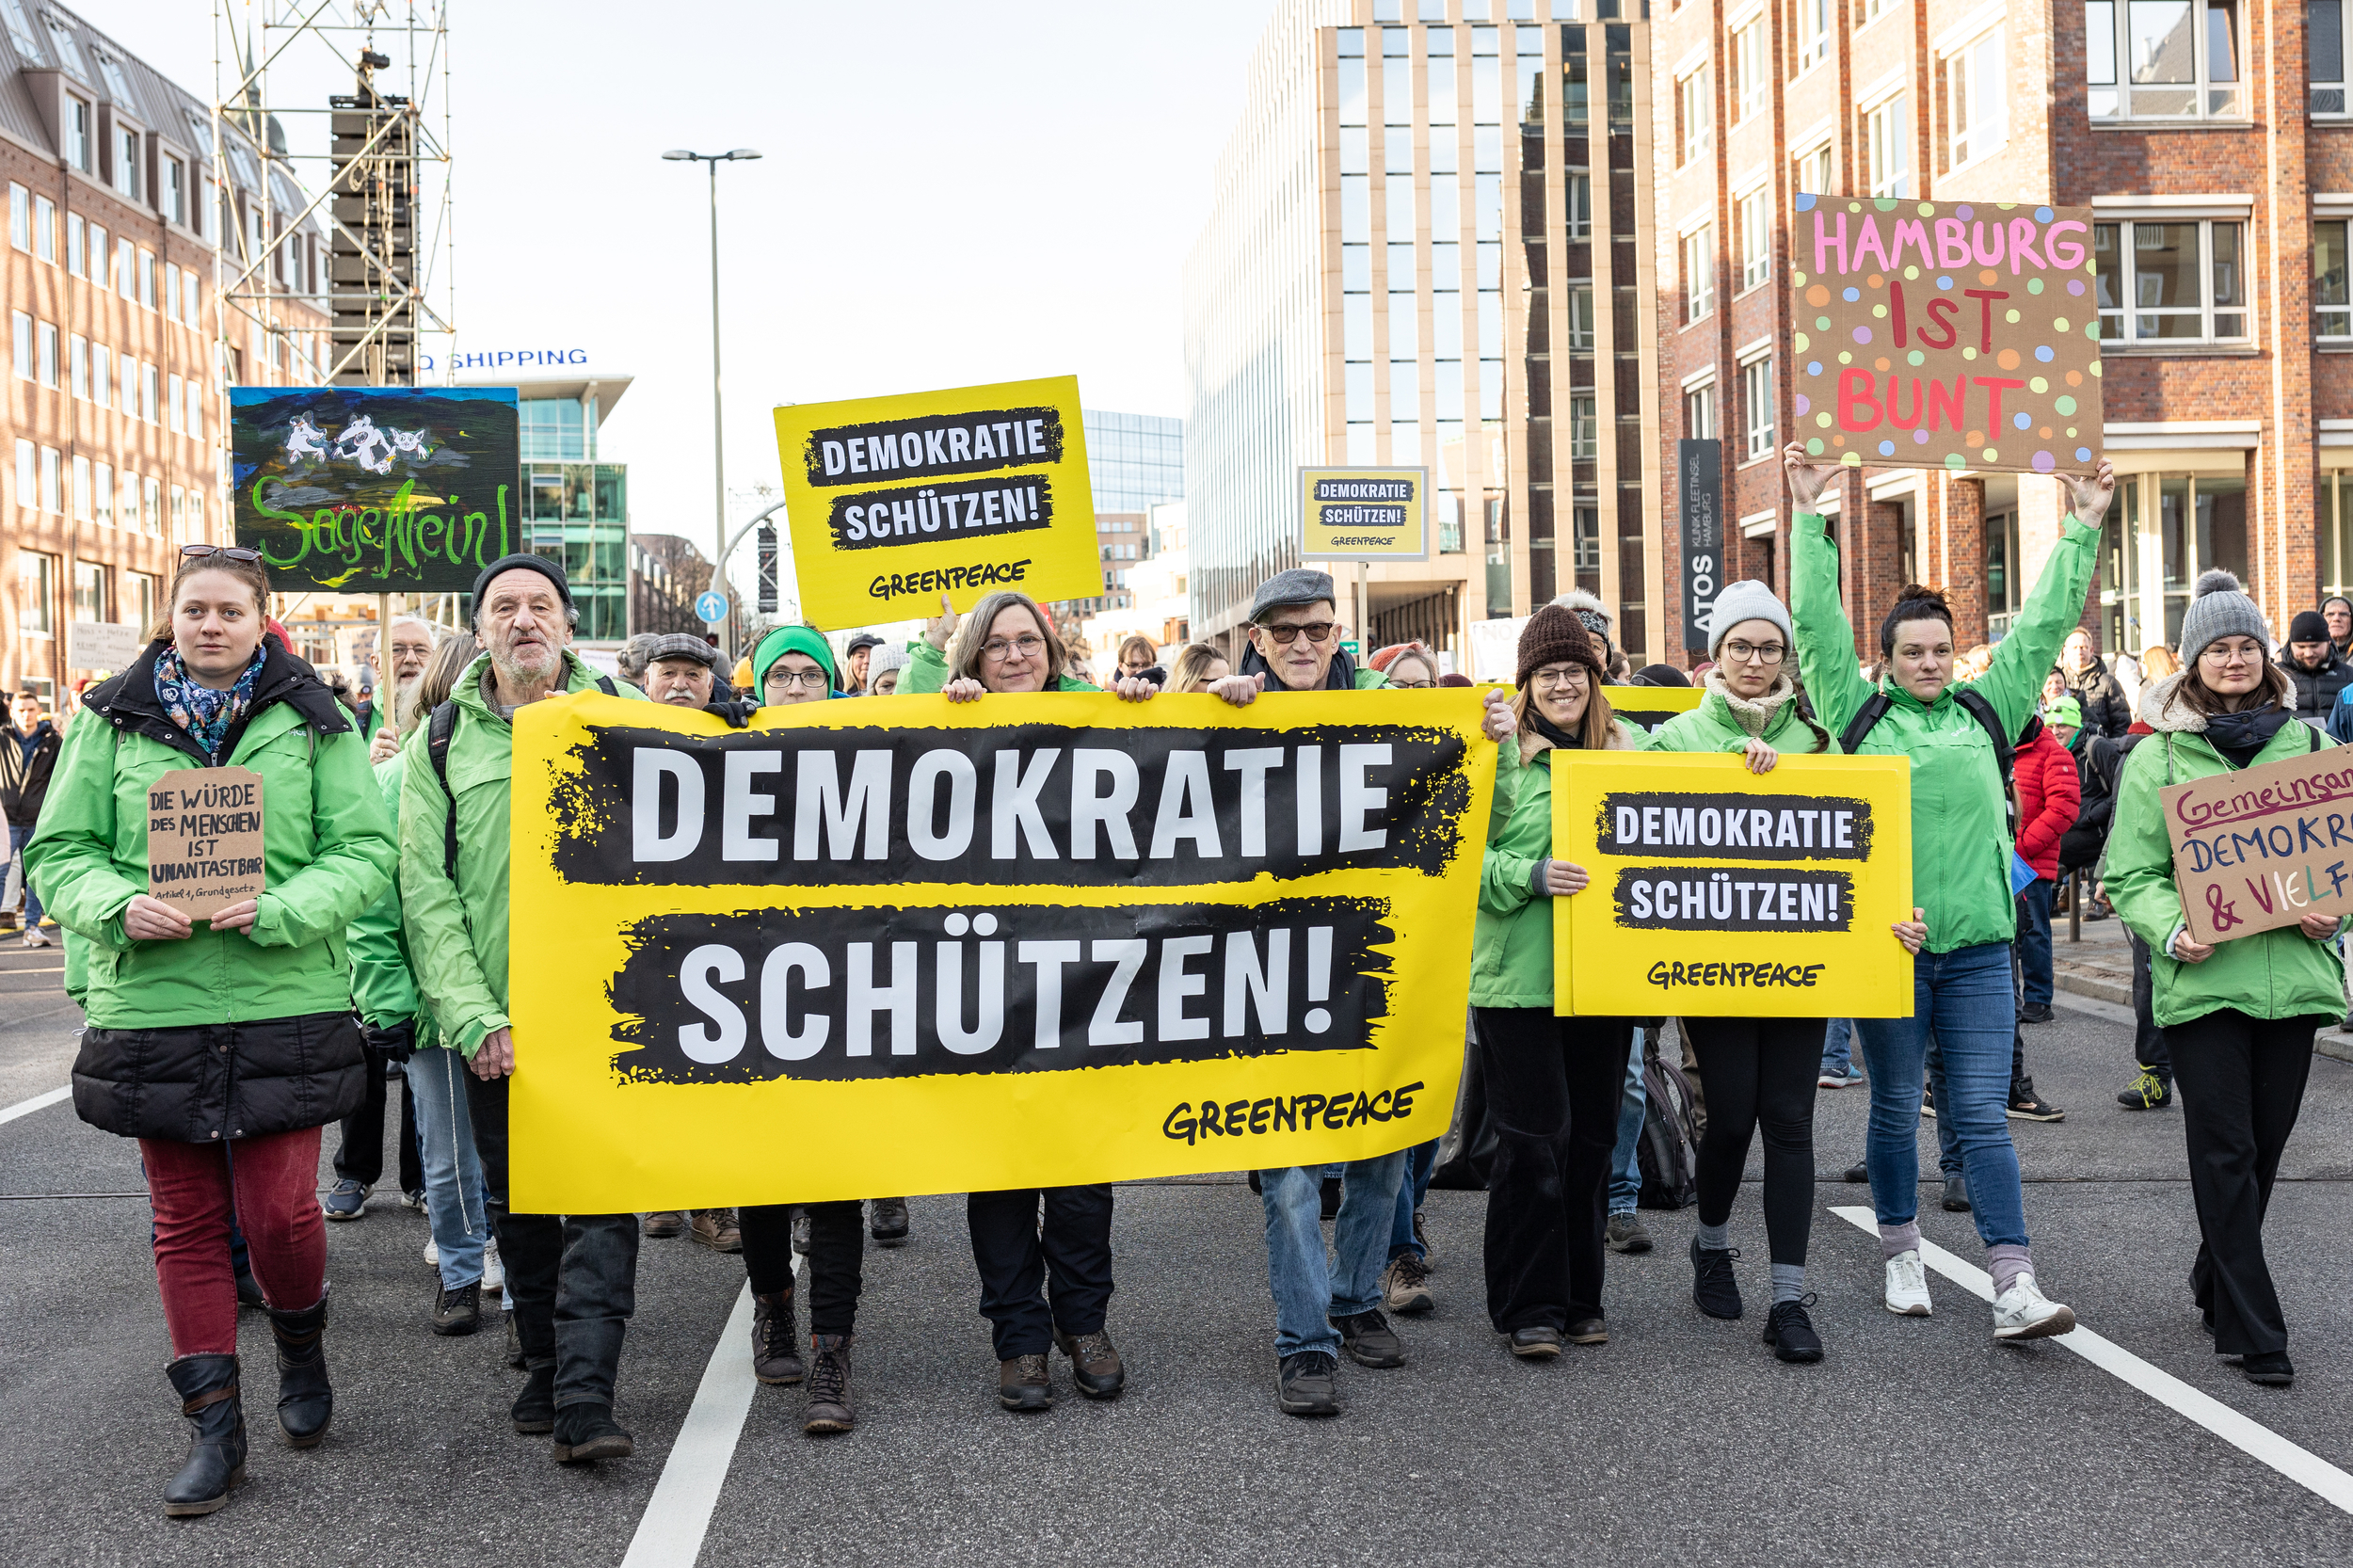 Greenpeace Team auf der Demo gegen Rechts in Hamburg. Ihre Banner tragen die Aufschrift 